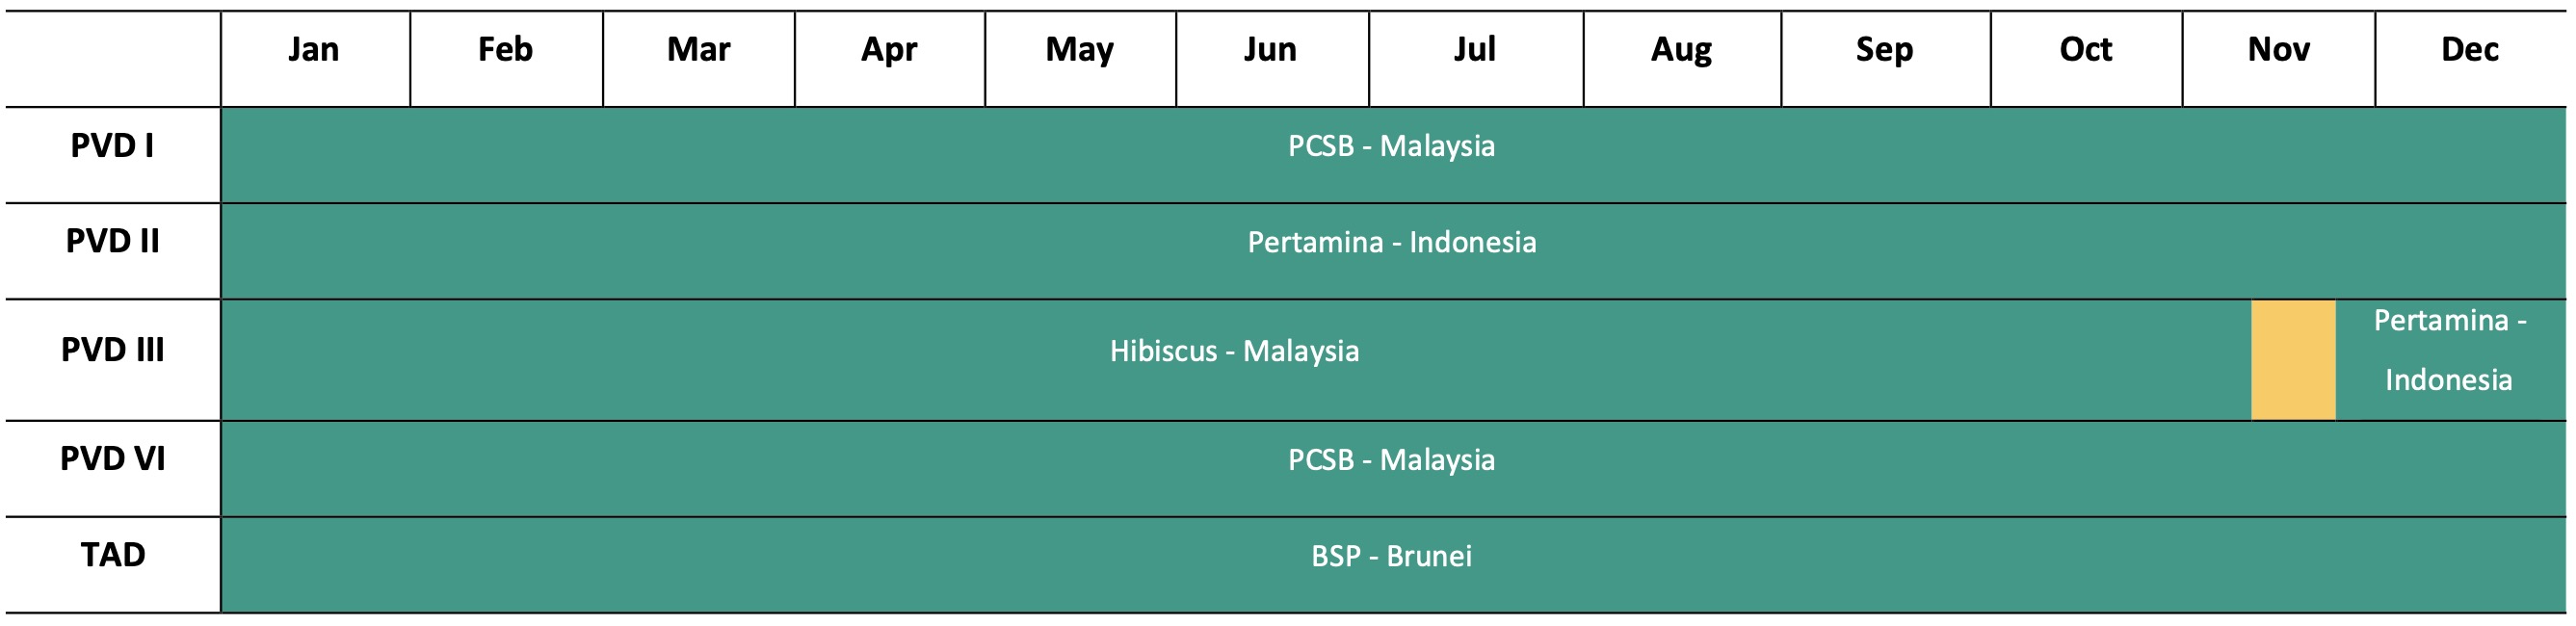 Vừa hết hợp đồng tại Thái Lan, giàn khoan của PV Drilling PVD có ngay việc tại Malaysia 2